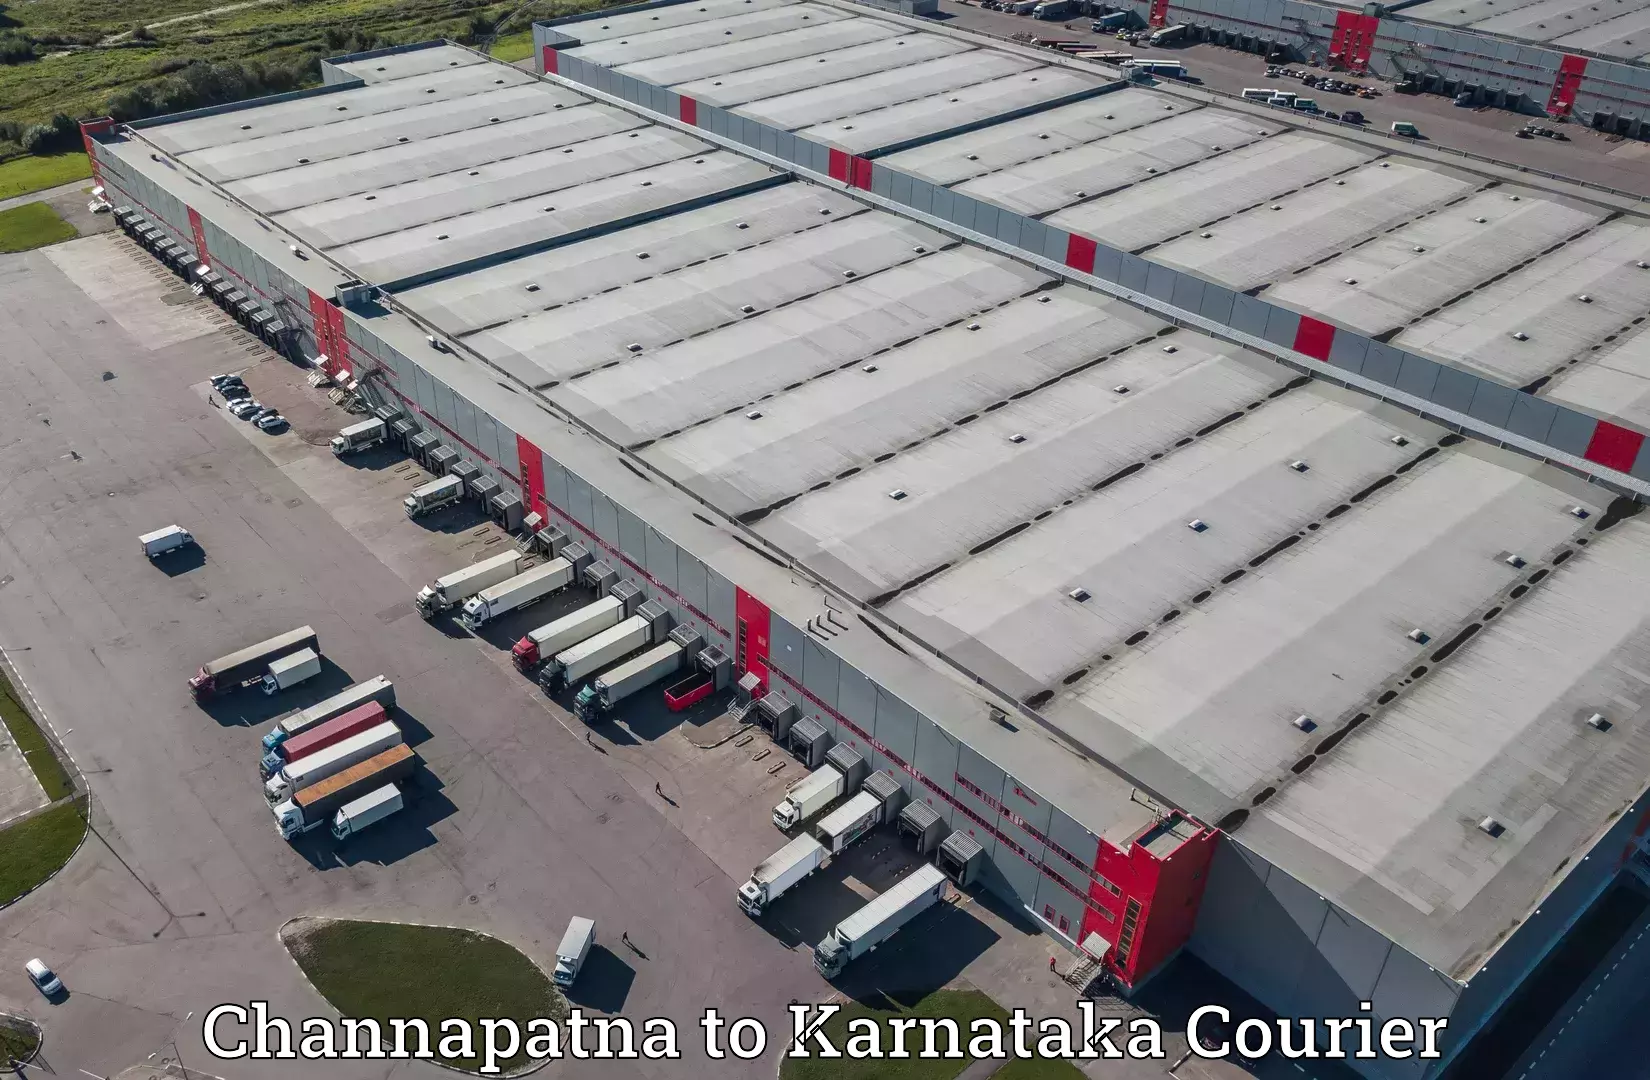 Express courier facilities Channapatna to Karnataka